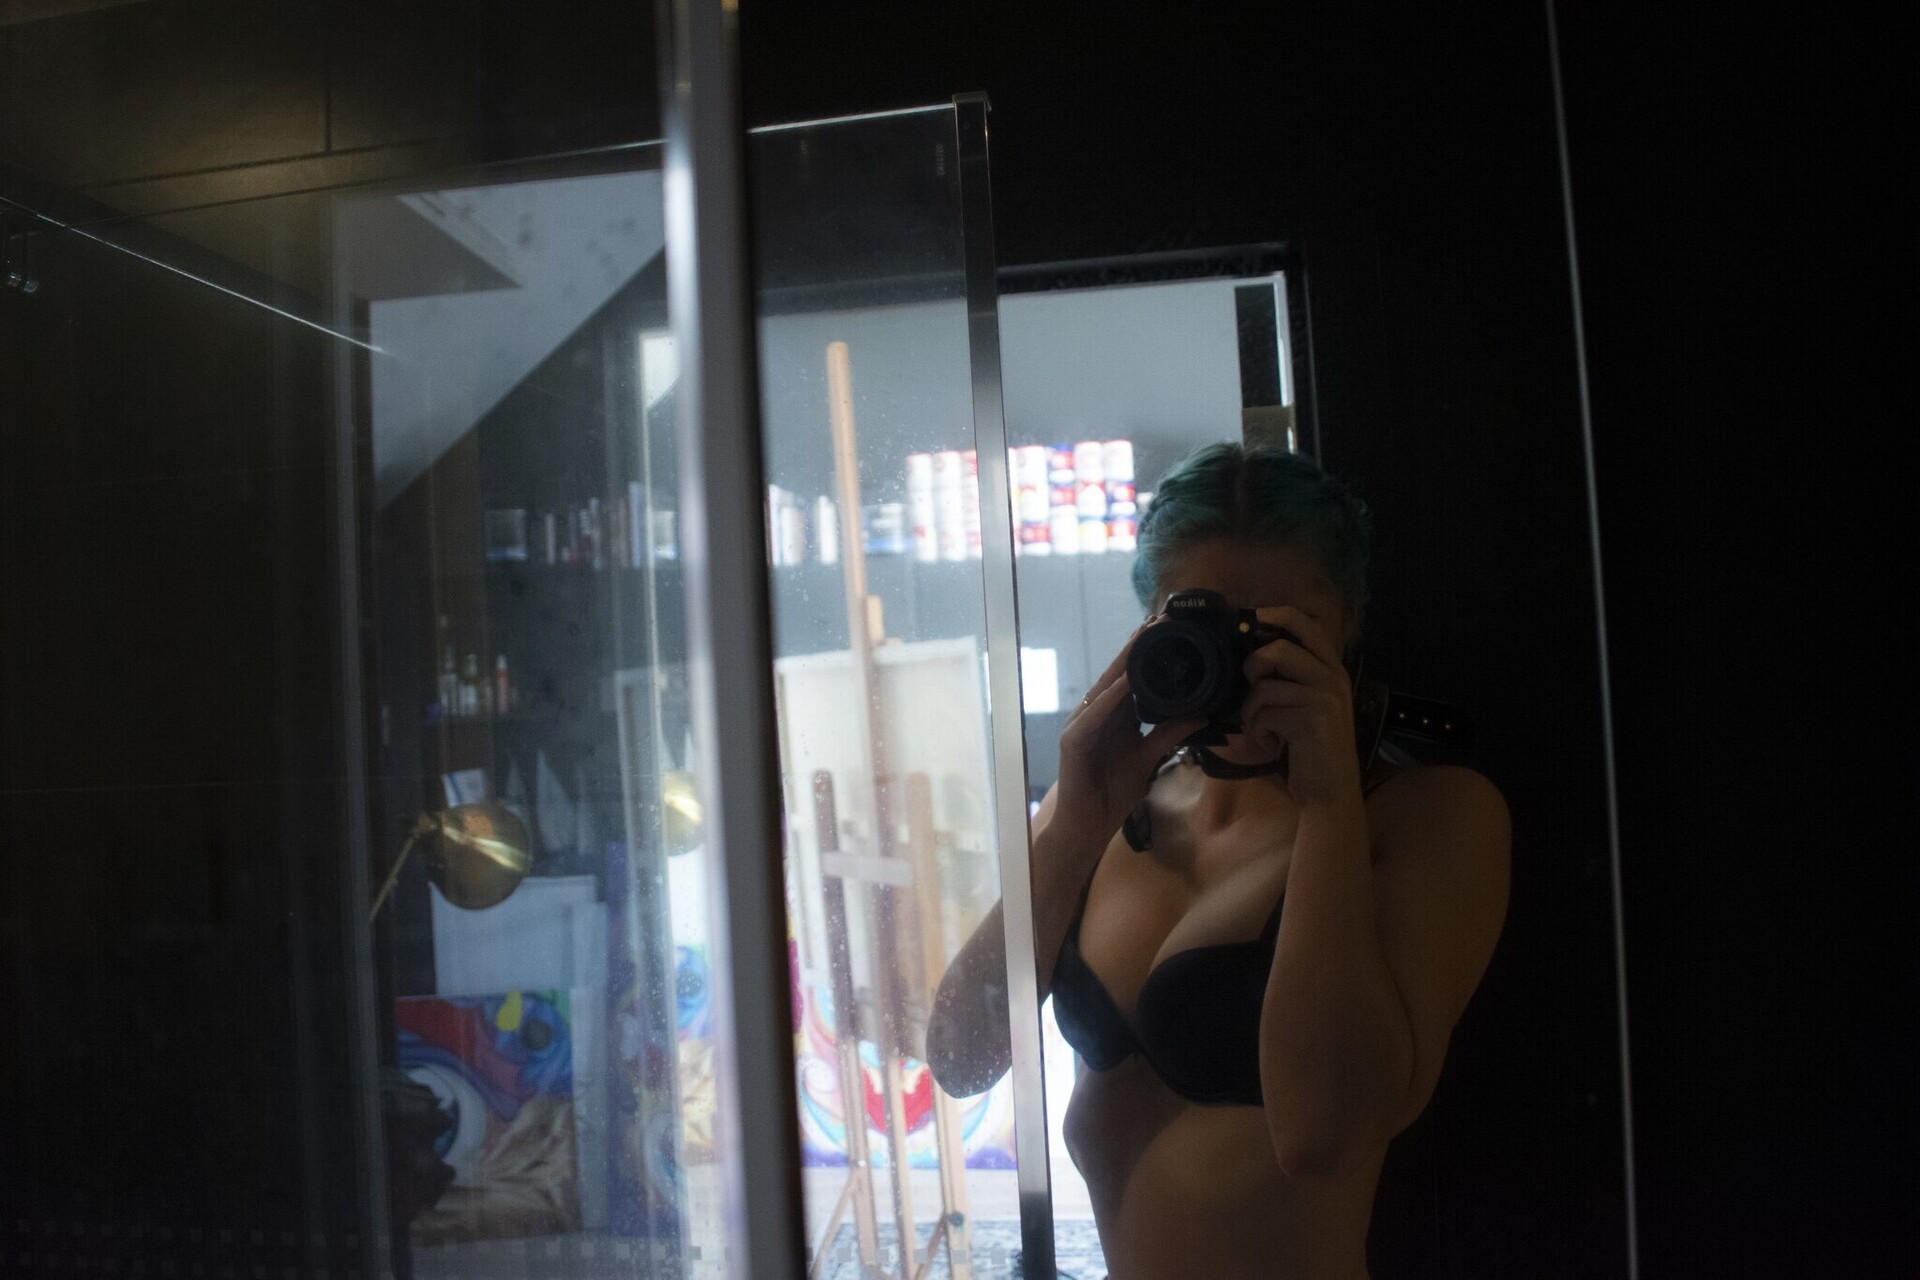 Blue hair lady selfie in the mirror